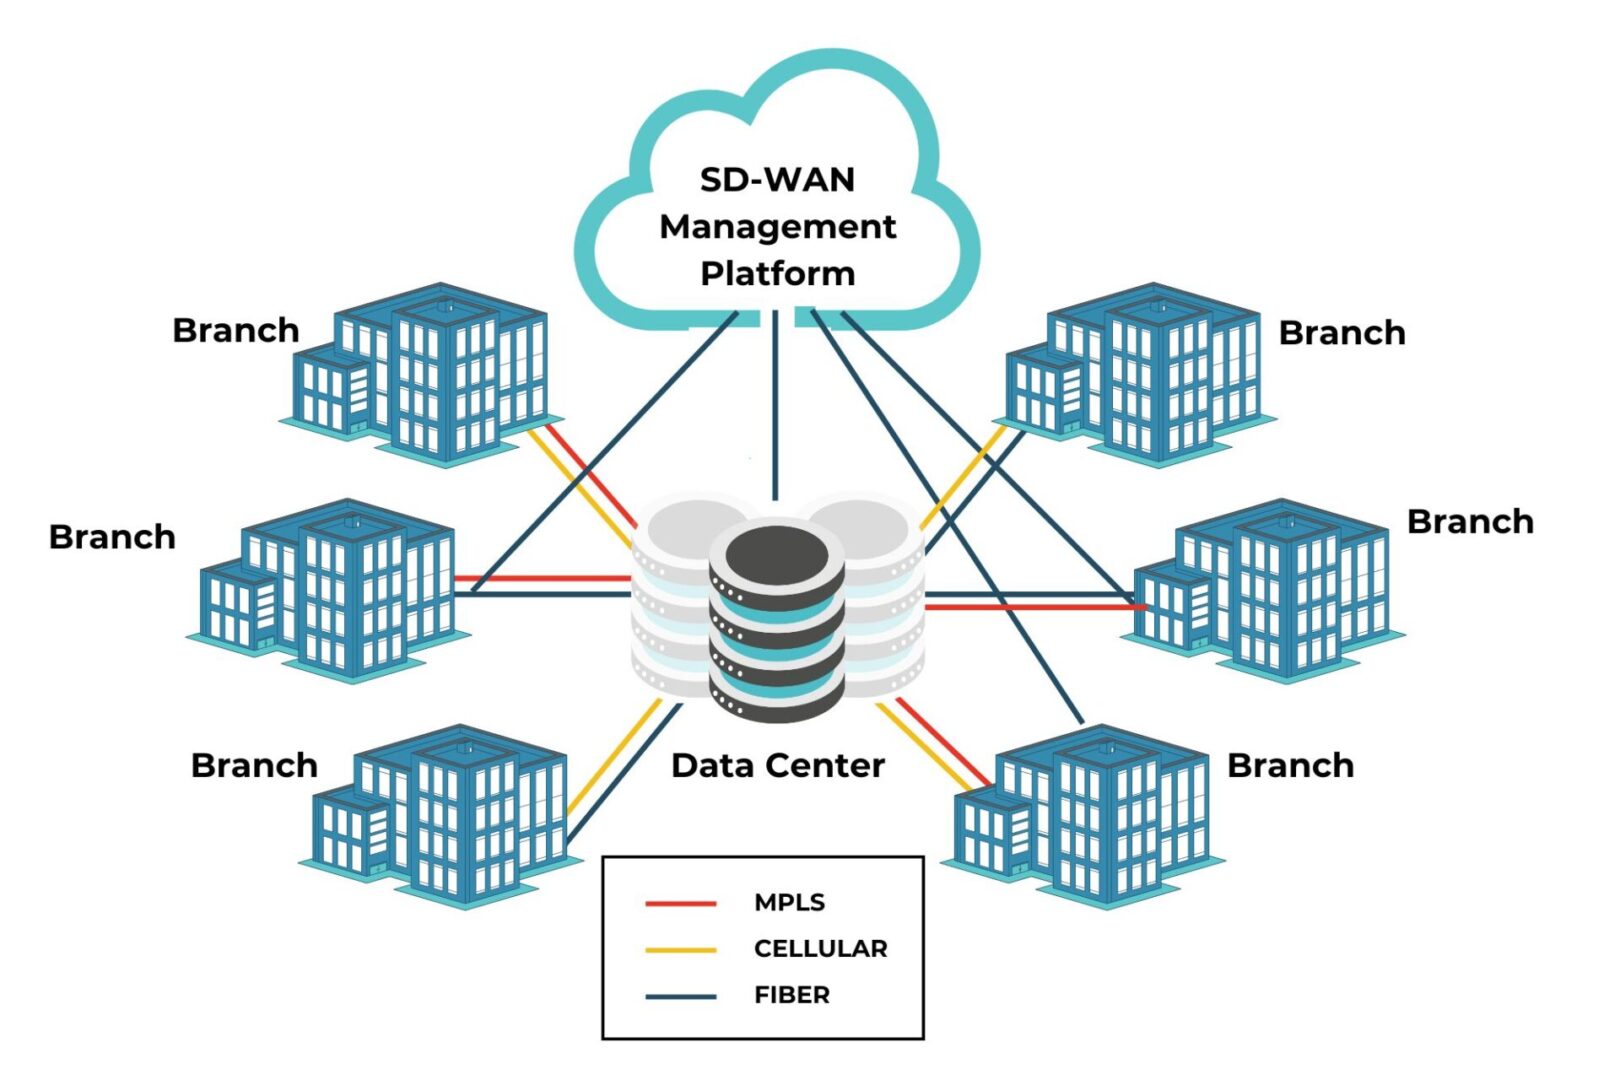 SD-WAN Management Platform